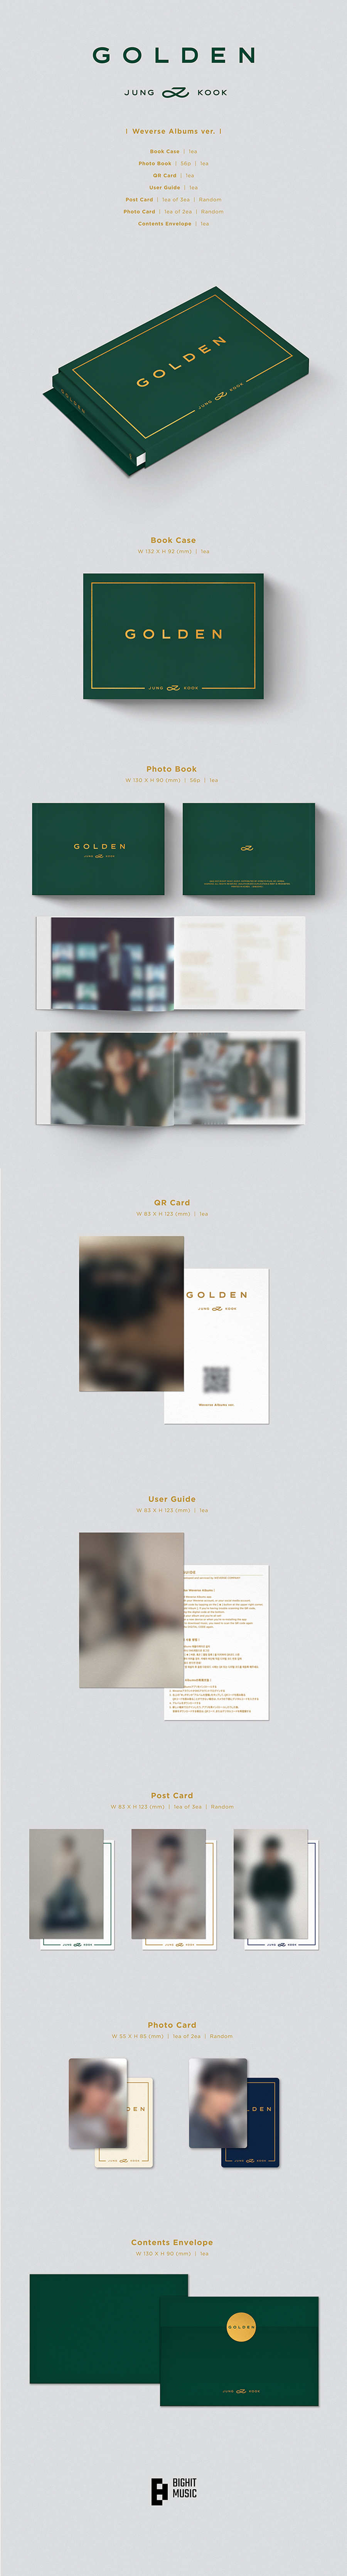 [PRE-ORDER] JUNGKOOK (BTS) - GOLDEN (Weverse Albums ver.) + WEVERSE POB